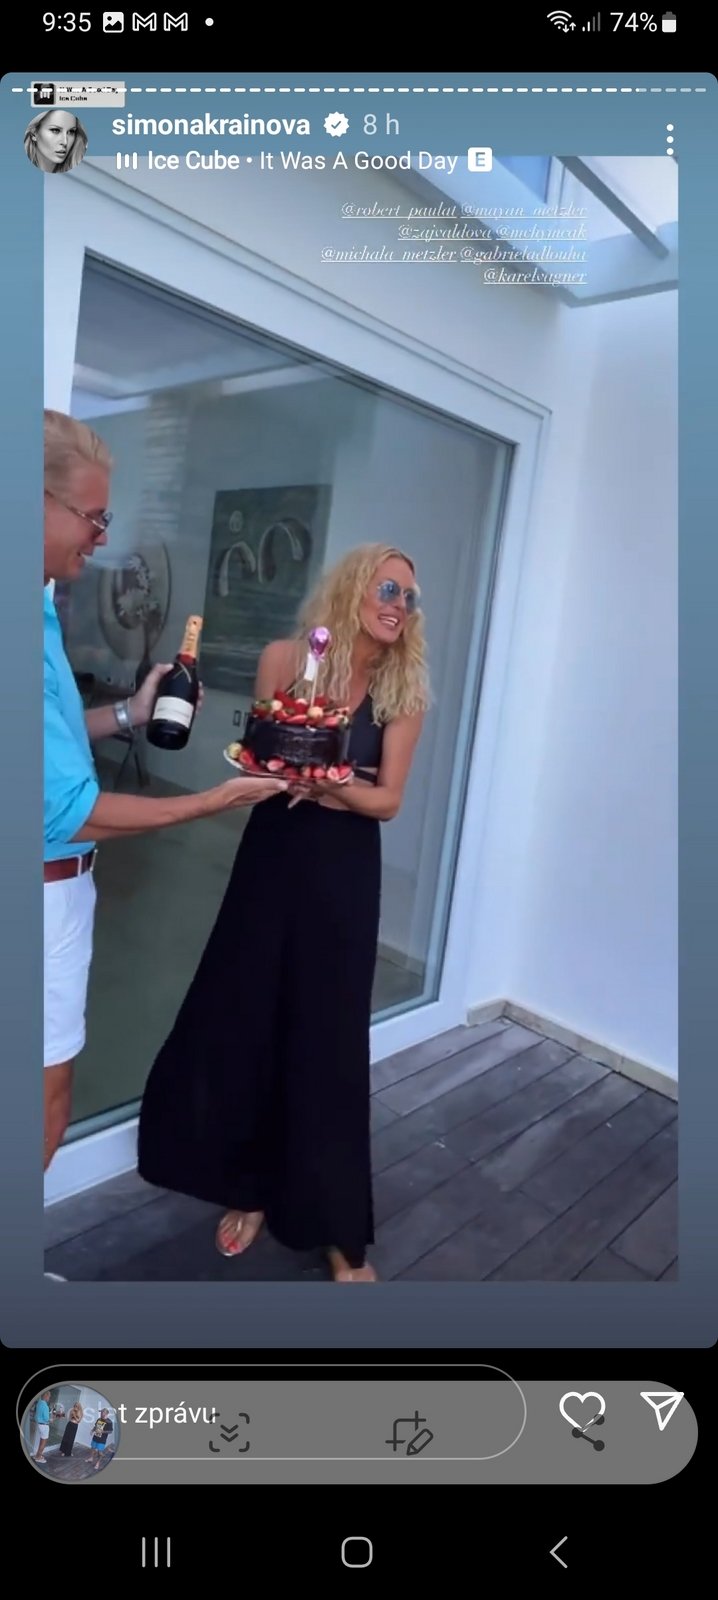 Velkolepou oslavu 50. narozeniny uspořádala Simona Krainová ve svém novém karibském domě.